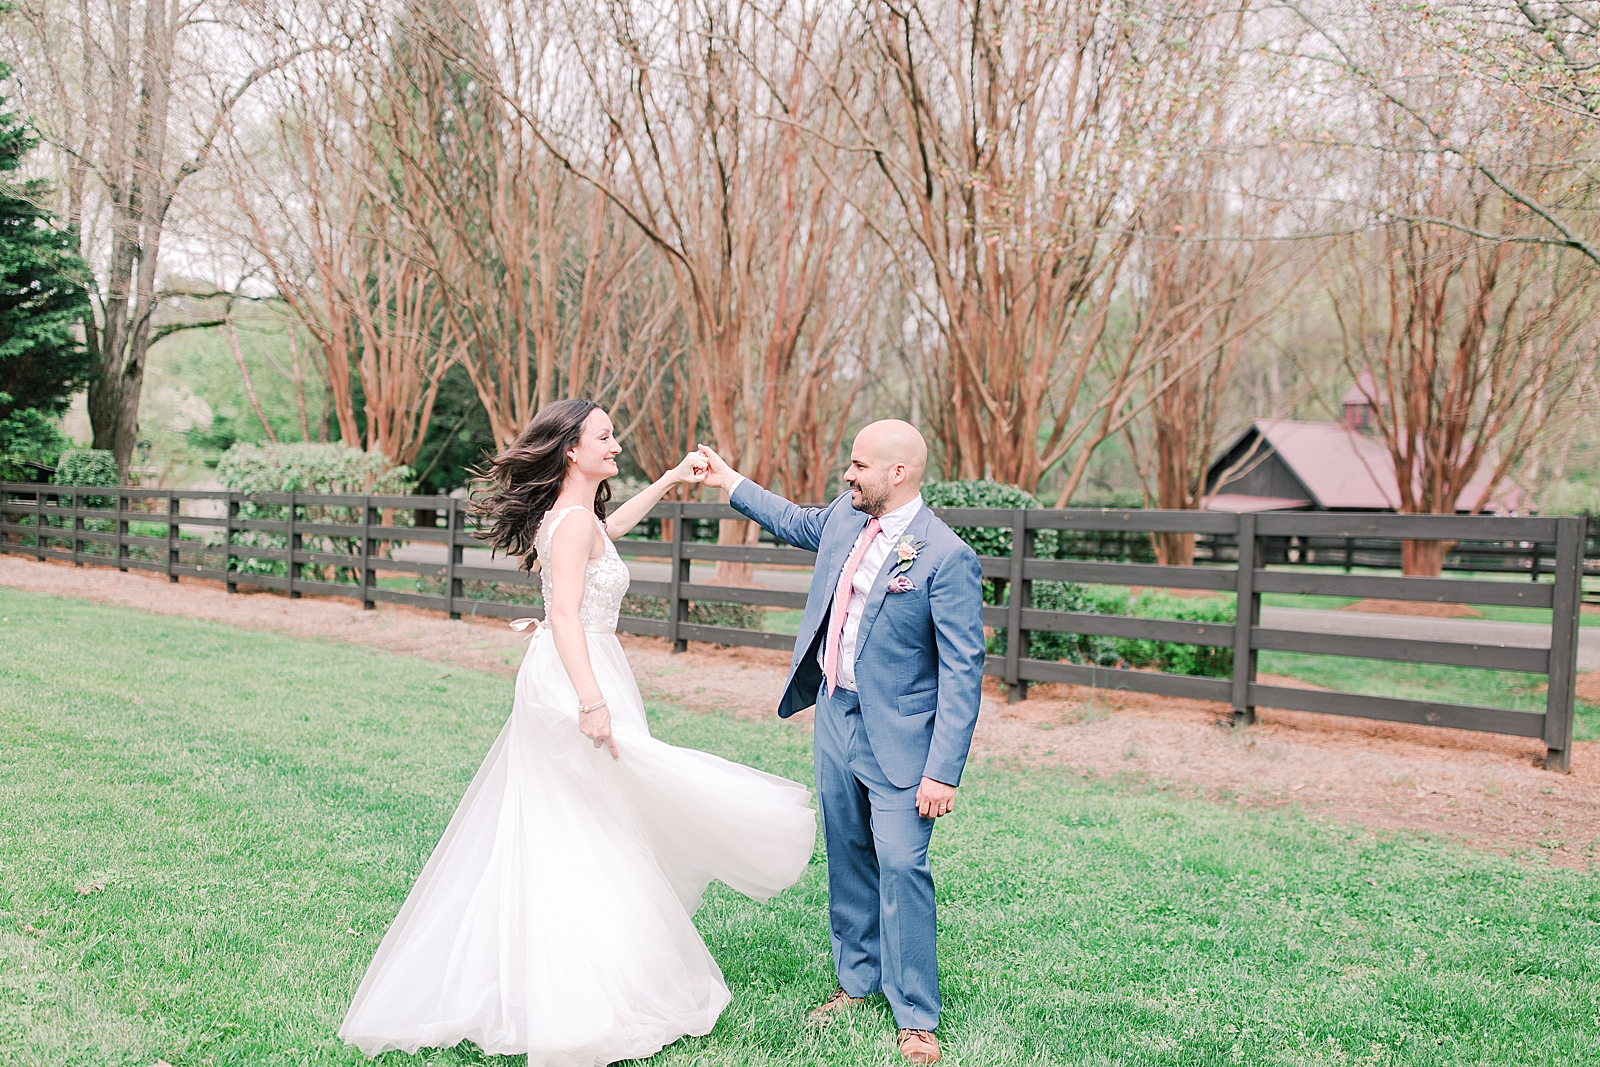 Spring Hawkesdene Wedding Groom twirling bride in field Photo